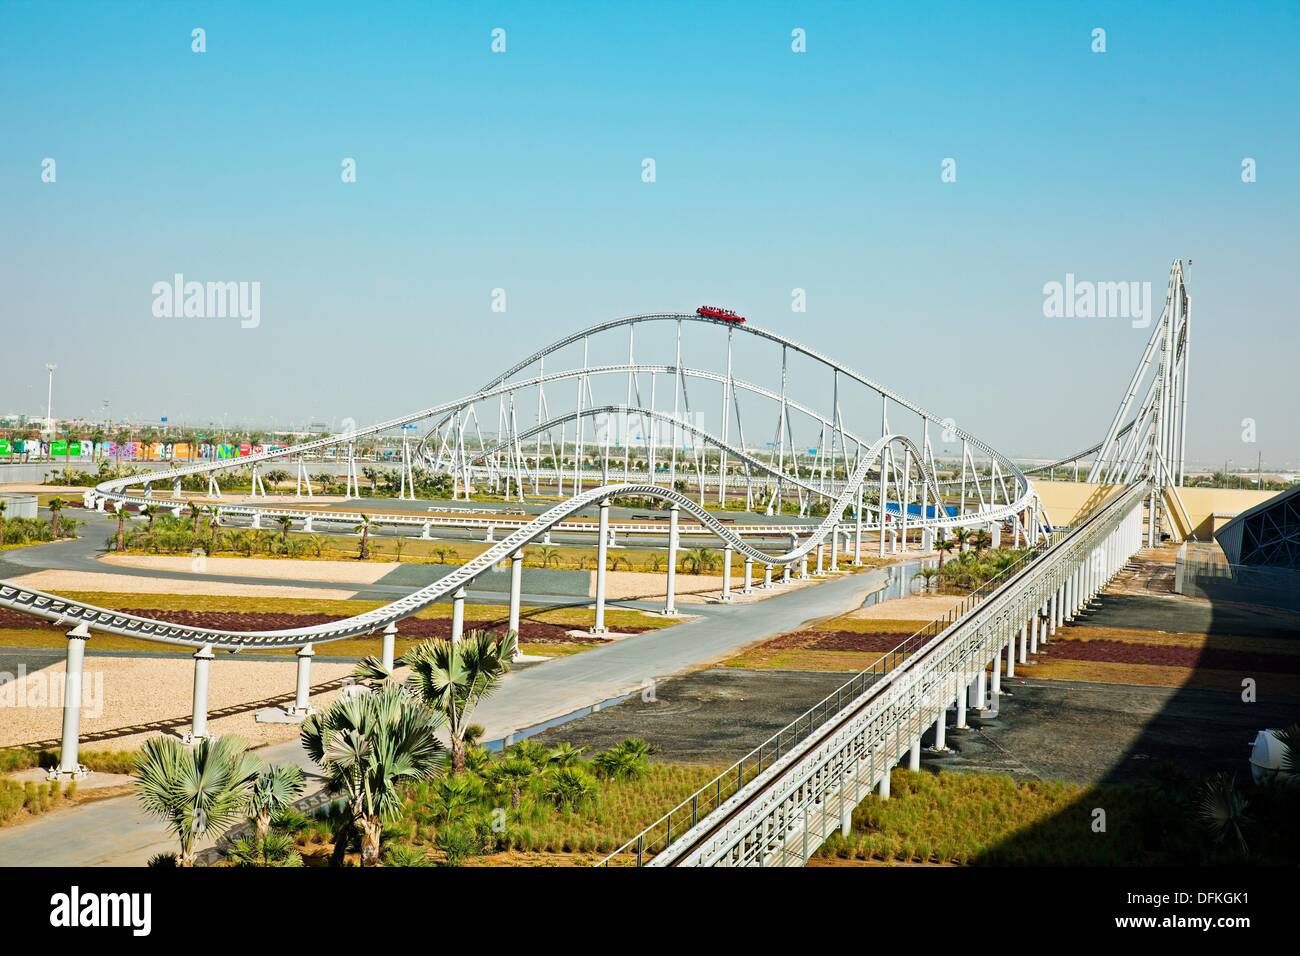 Les visiteurs les plus rapides du monde d'équitation roller coaster,  Formule Rossa, au , Ferrari World Abu Dhabi, Émirats arabes unis, au  Moyen-Orient Photo Stock - Alamy